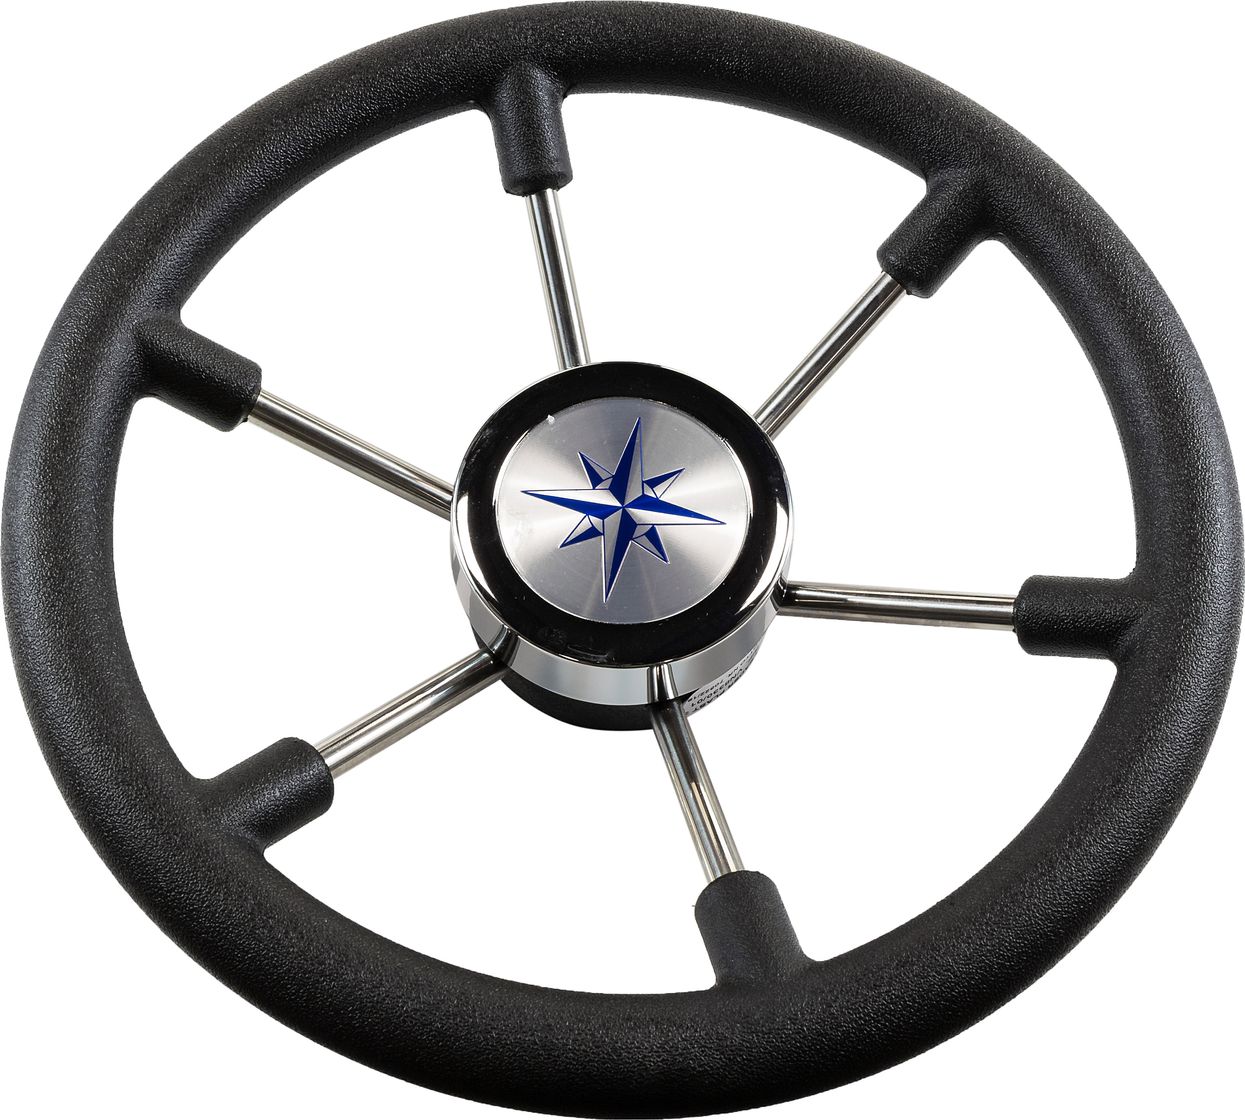 Рулевое колесо LEADER PLAST черный обод серебряные спицы д. 330 мм VN8330-01 рулевое колесо leader plast обод серебряные спицы д 330 мм vn8330 01